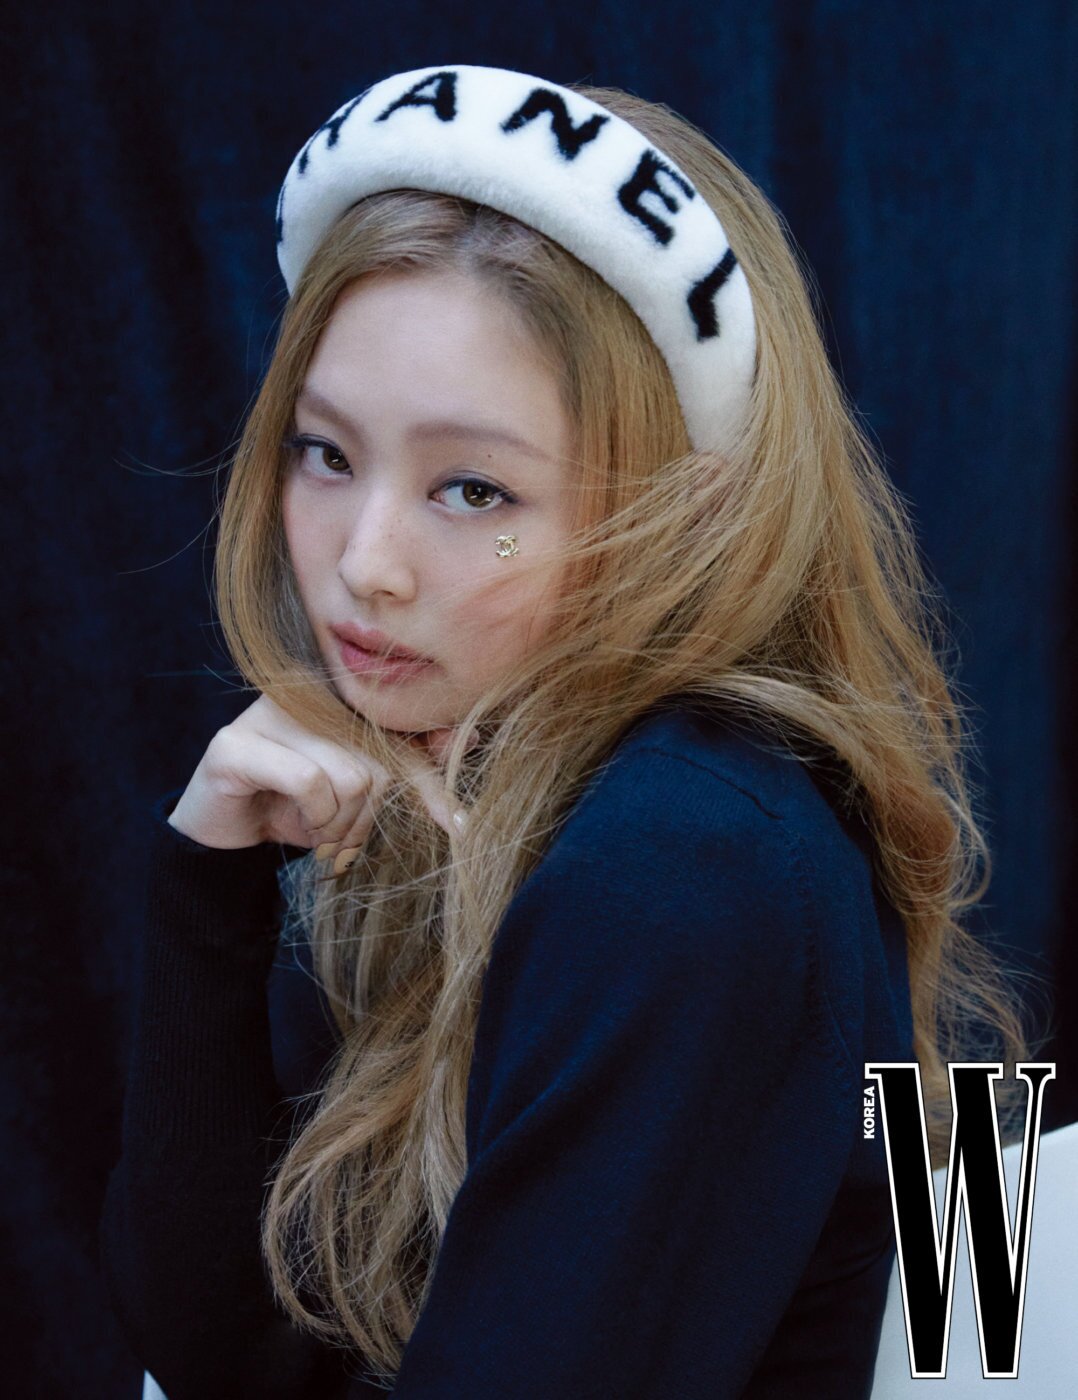 BLACKPINK-Jennie-for-Chanel-x-W-Korea-July-2022-Issue-documents-12.jpeg?v=ba50e